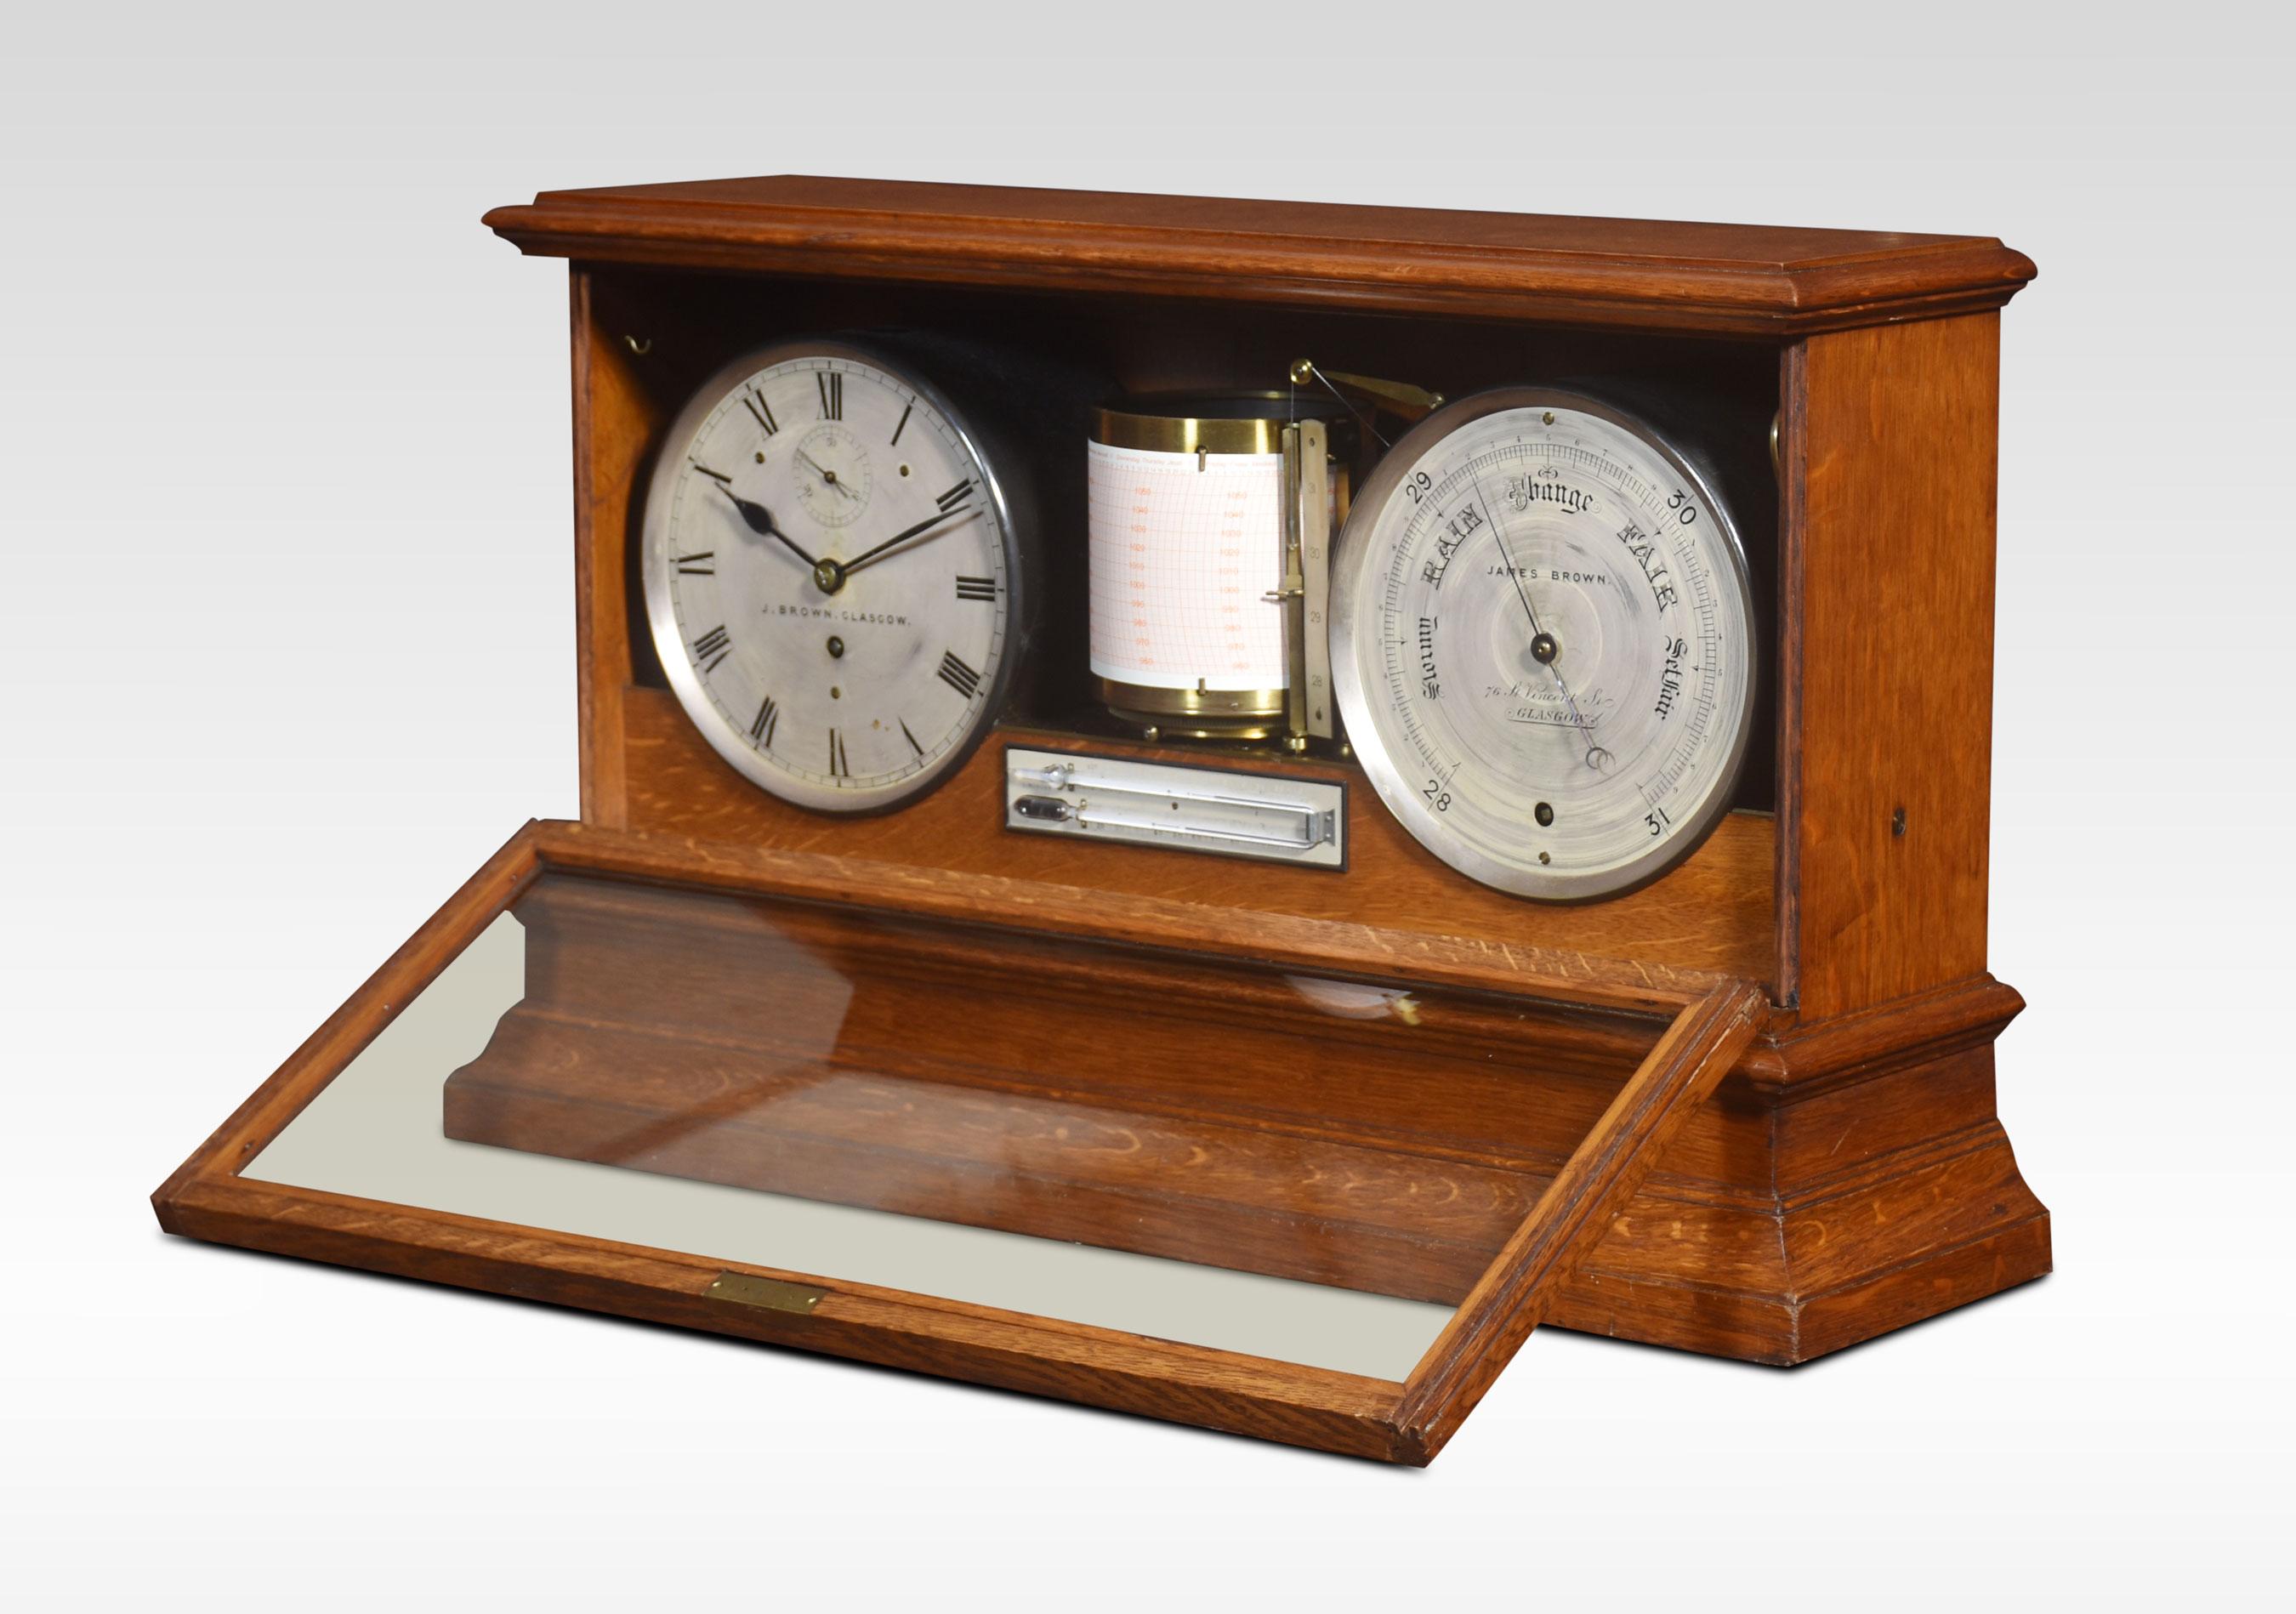 British Oak cased weather station For Sale